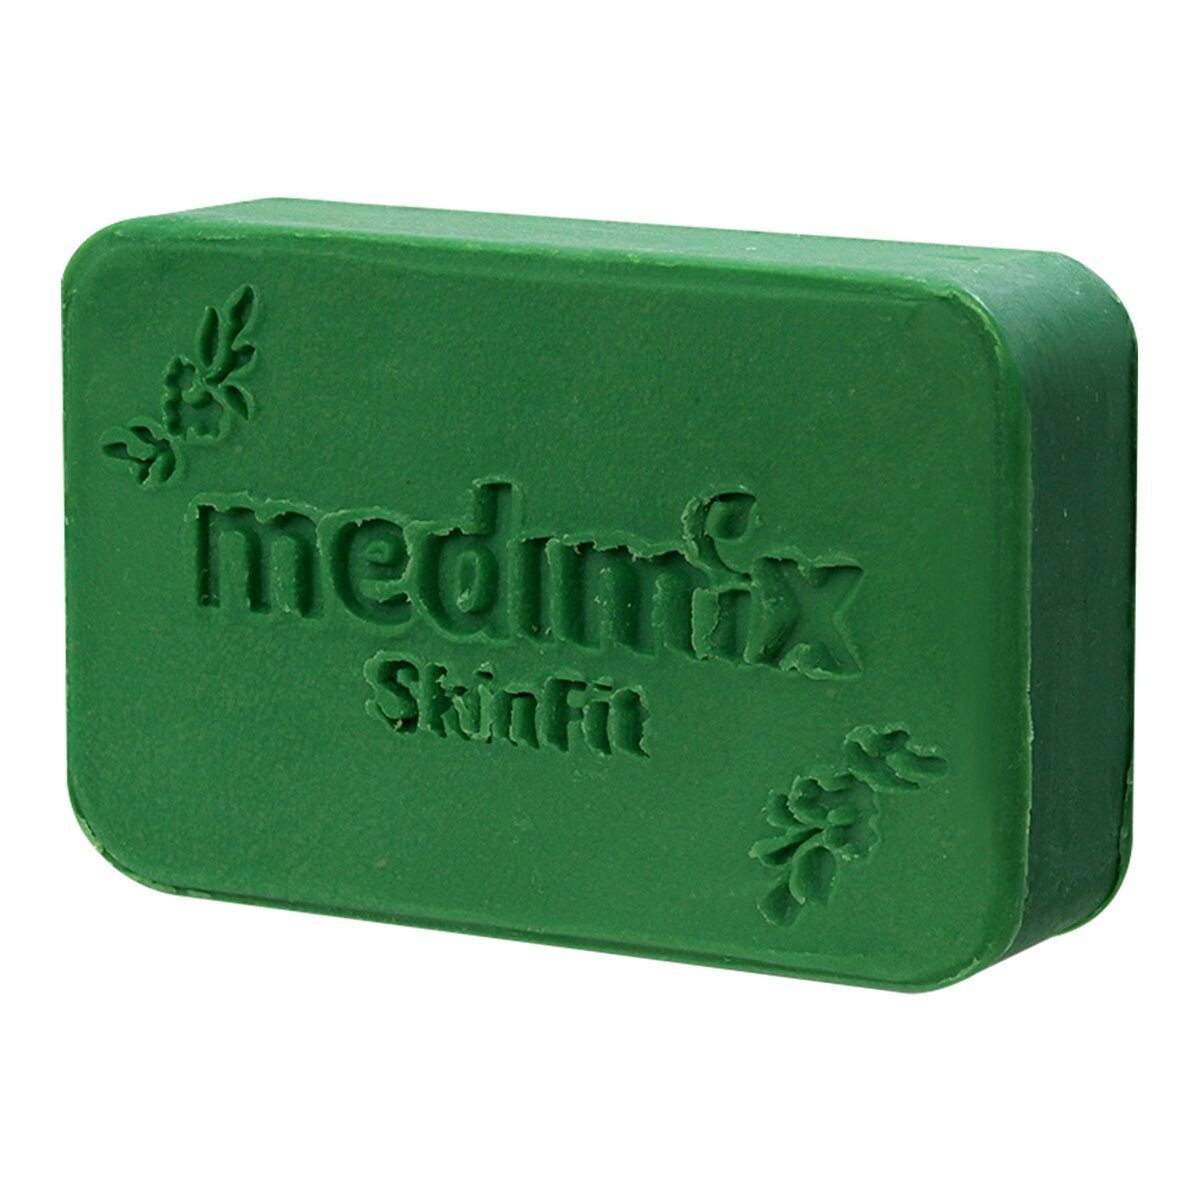 Medimix 印度綠寶石皇室藥草浴美肌皂 (草本/檀香/寶貝) 200公克 X 64入